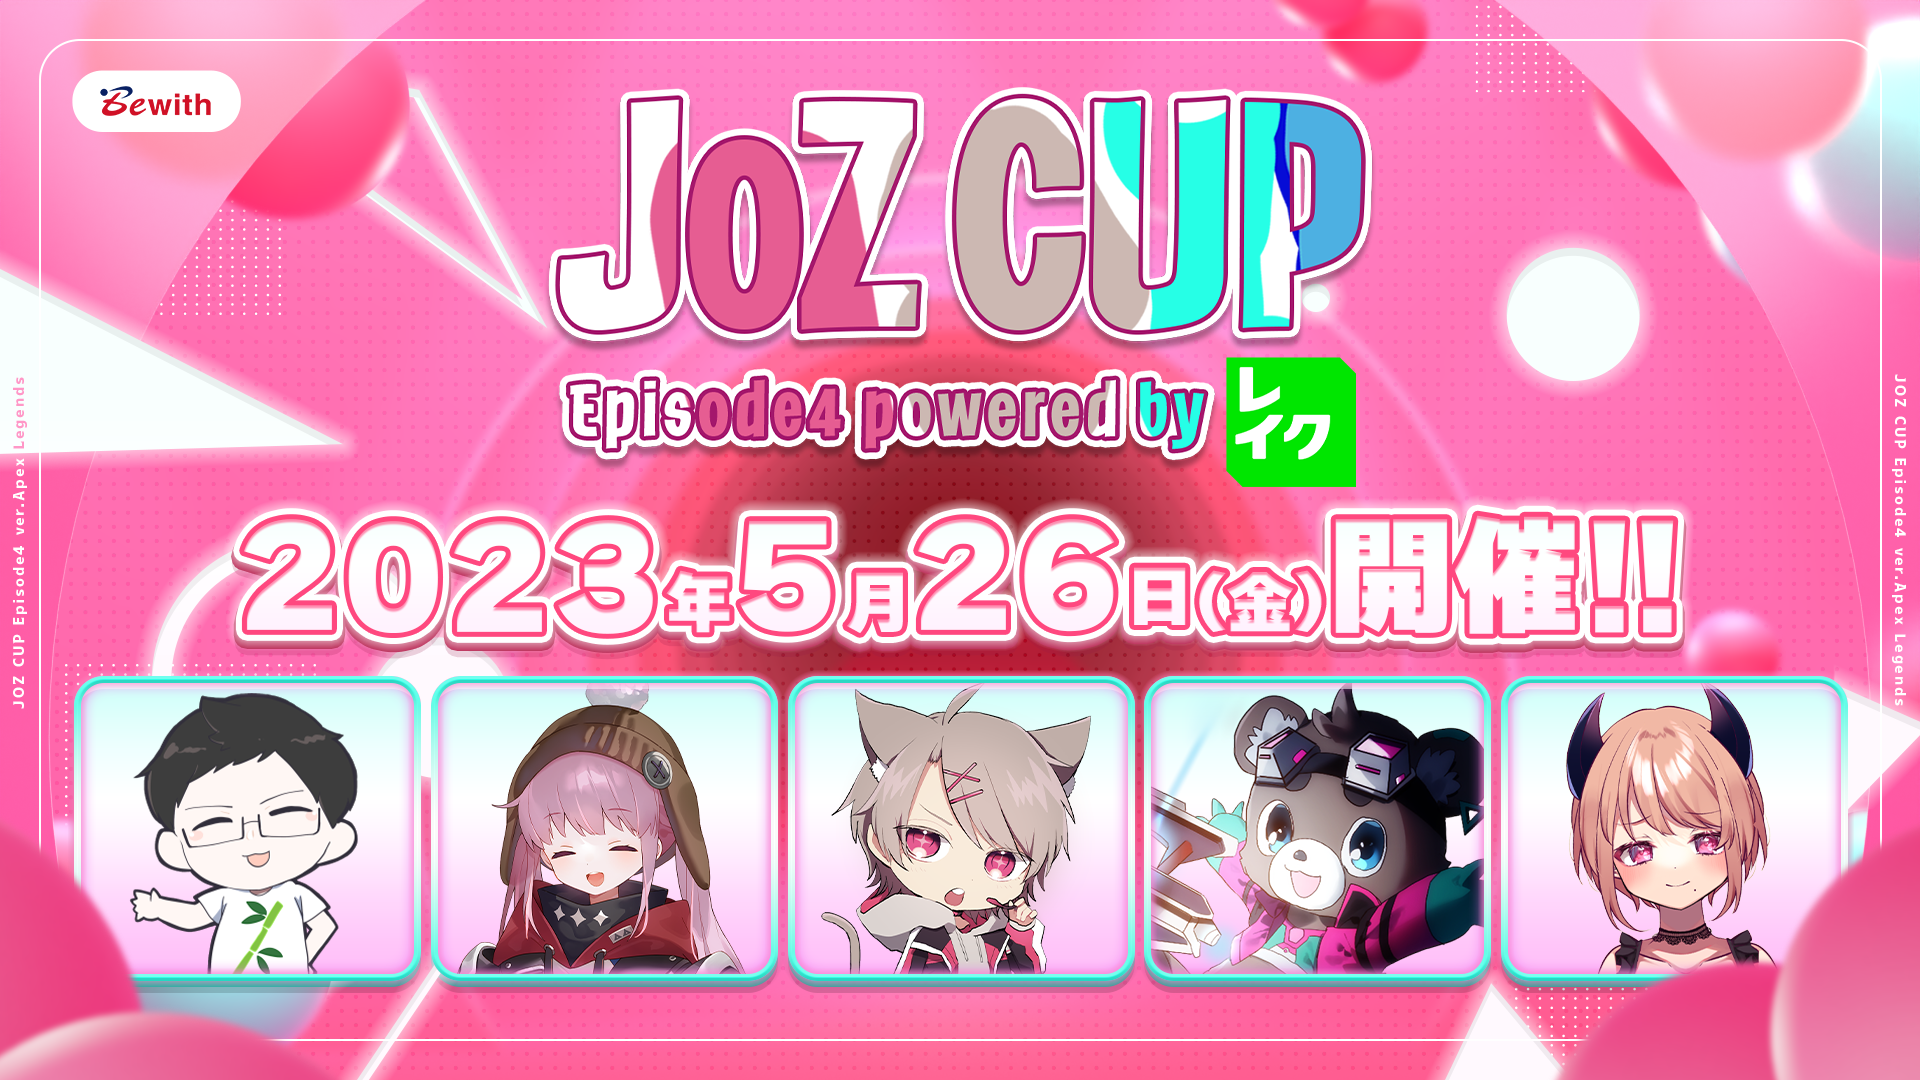 【大会情報】JOZ CUP Episode4 powered by レイク【2023年5月26日】